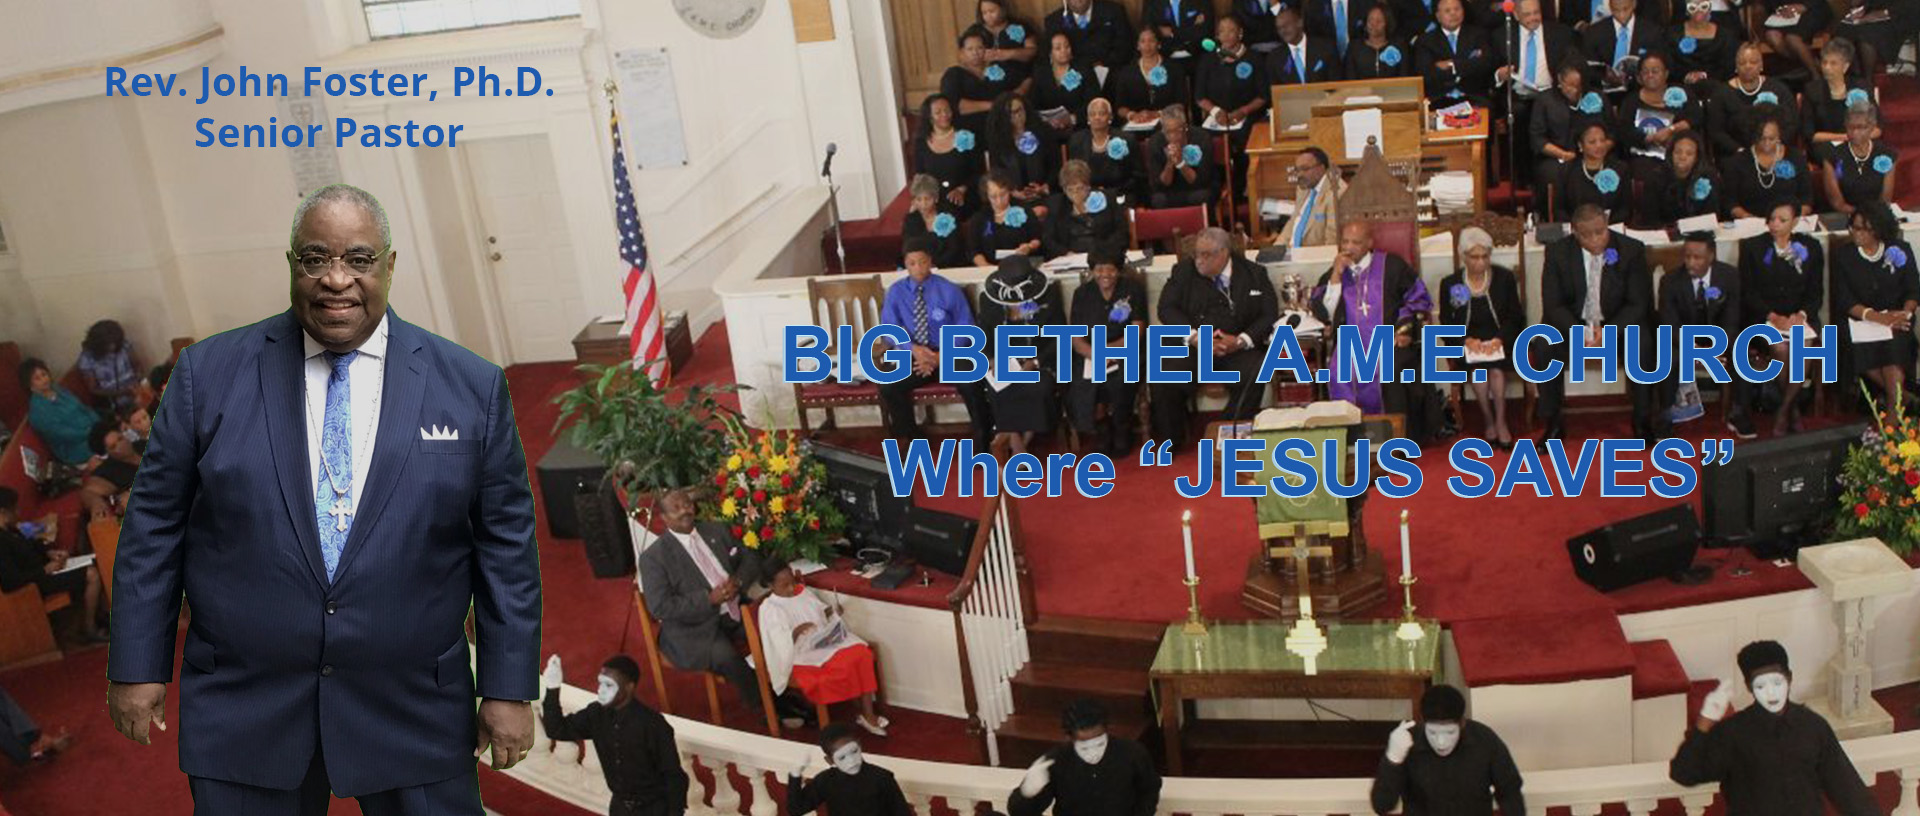 BIG BETHE A.M.E. CHURCH Where JESUS SAVES